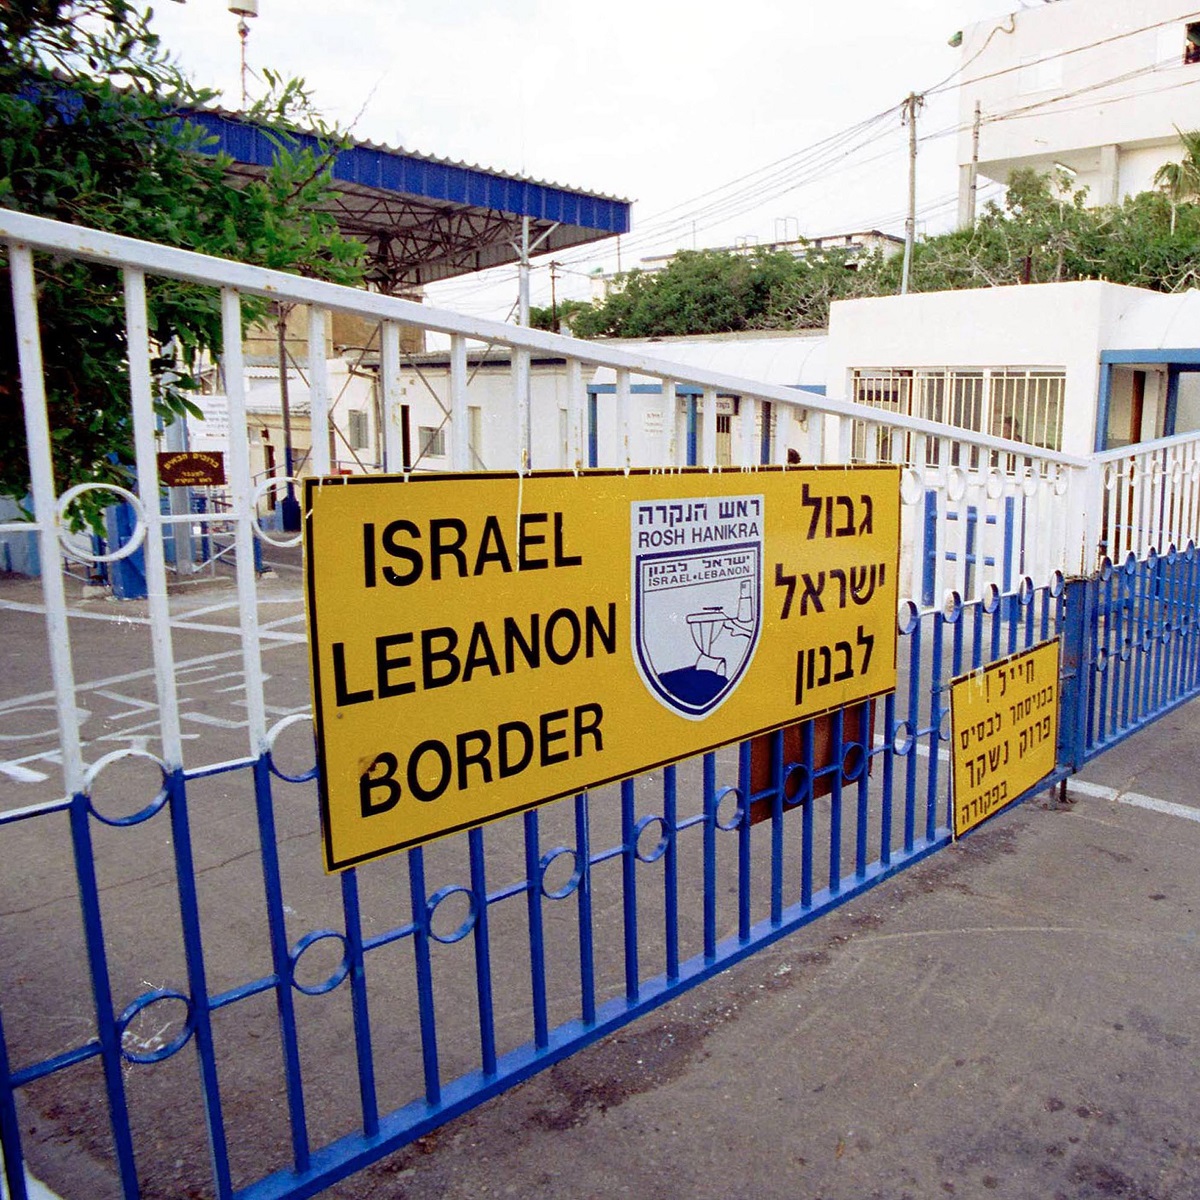 The Israeli-Lebanese border along the coastal road, south of Enn Naqoura